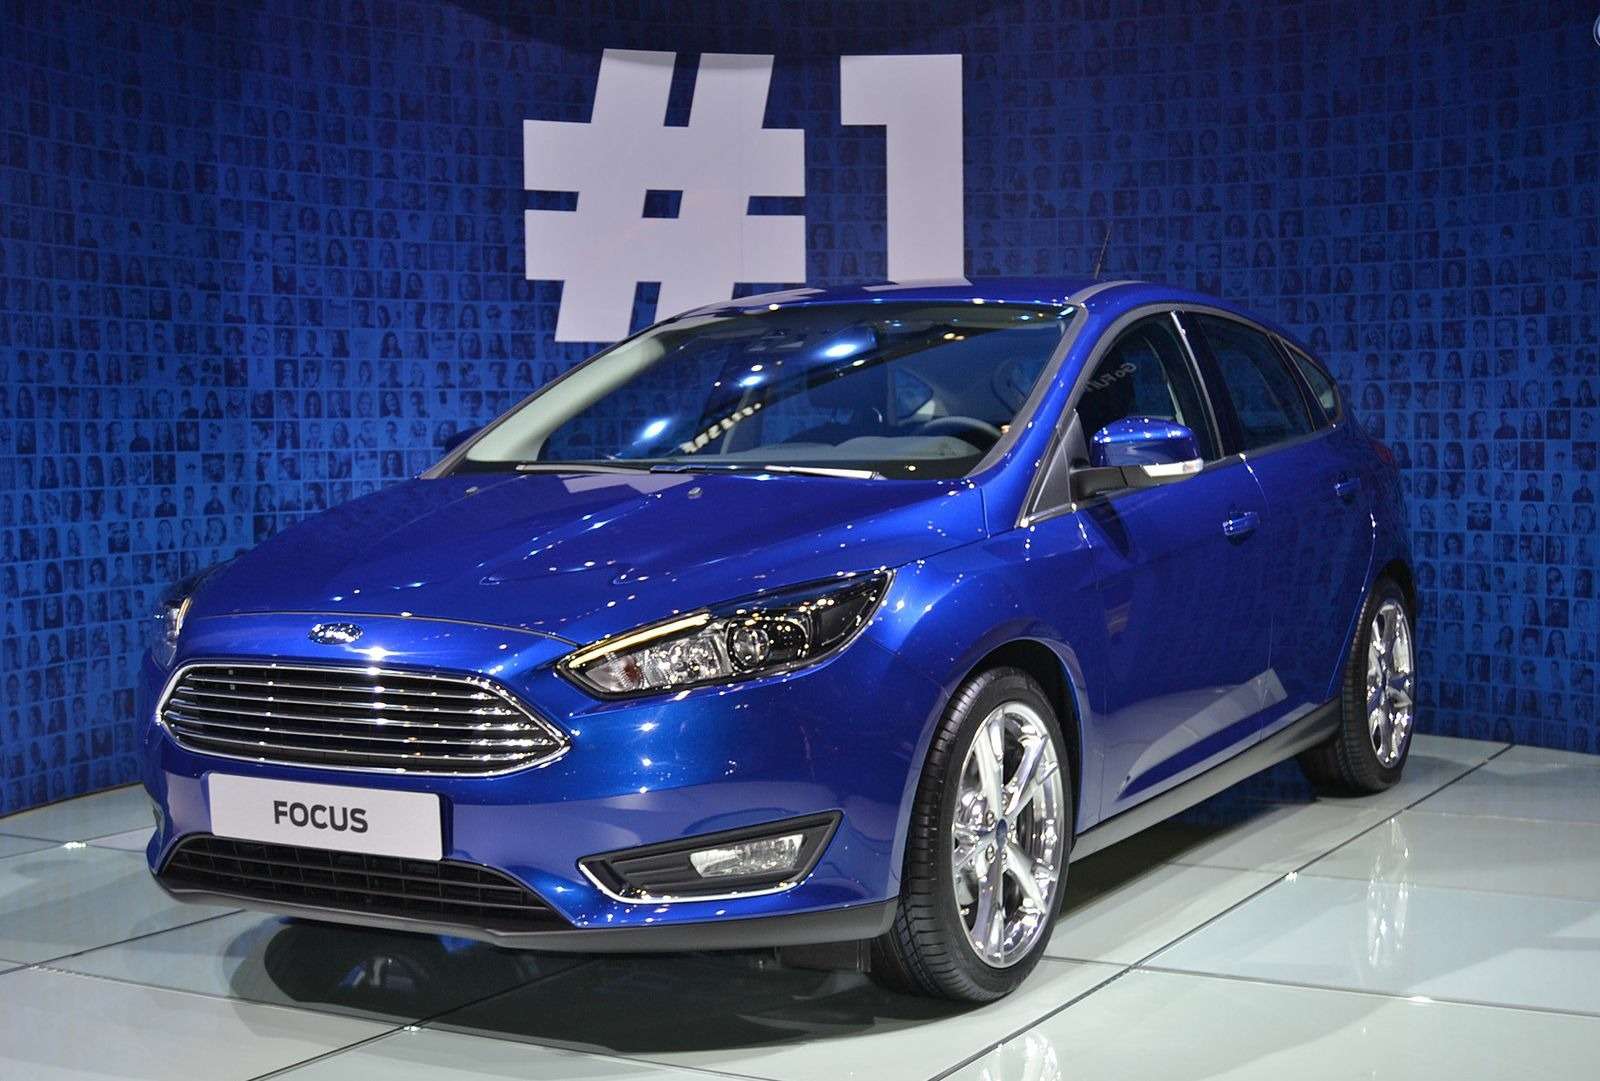 Завод Ford Sollers во Всеволожске начал серийный выпуск нового Focus — фото 382616